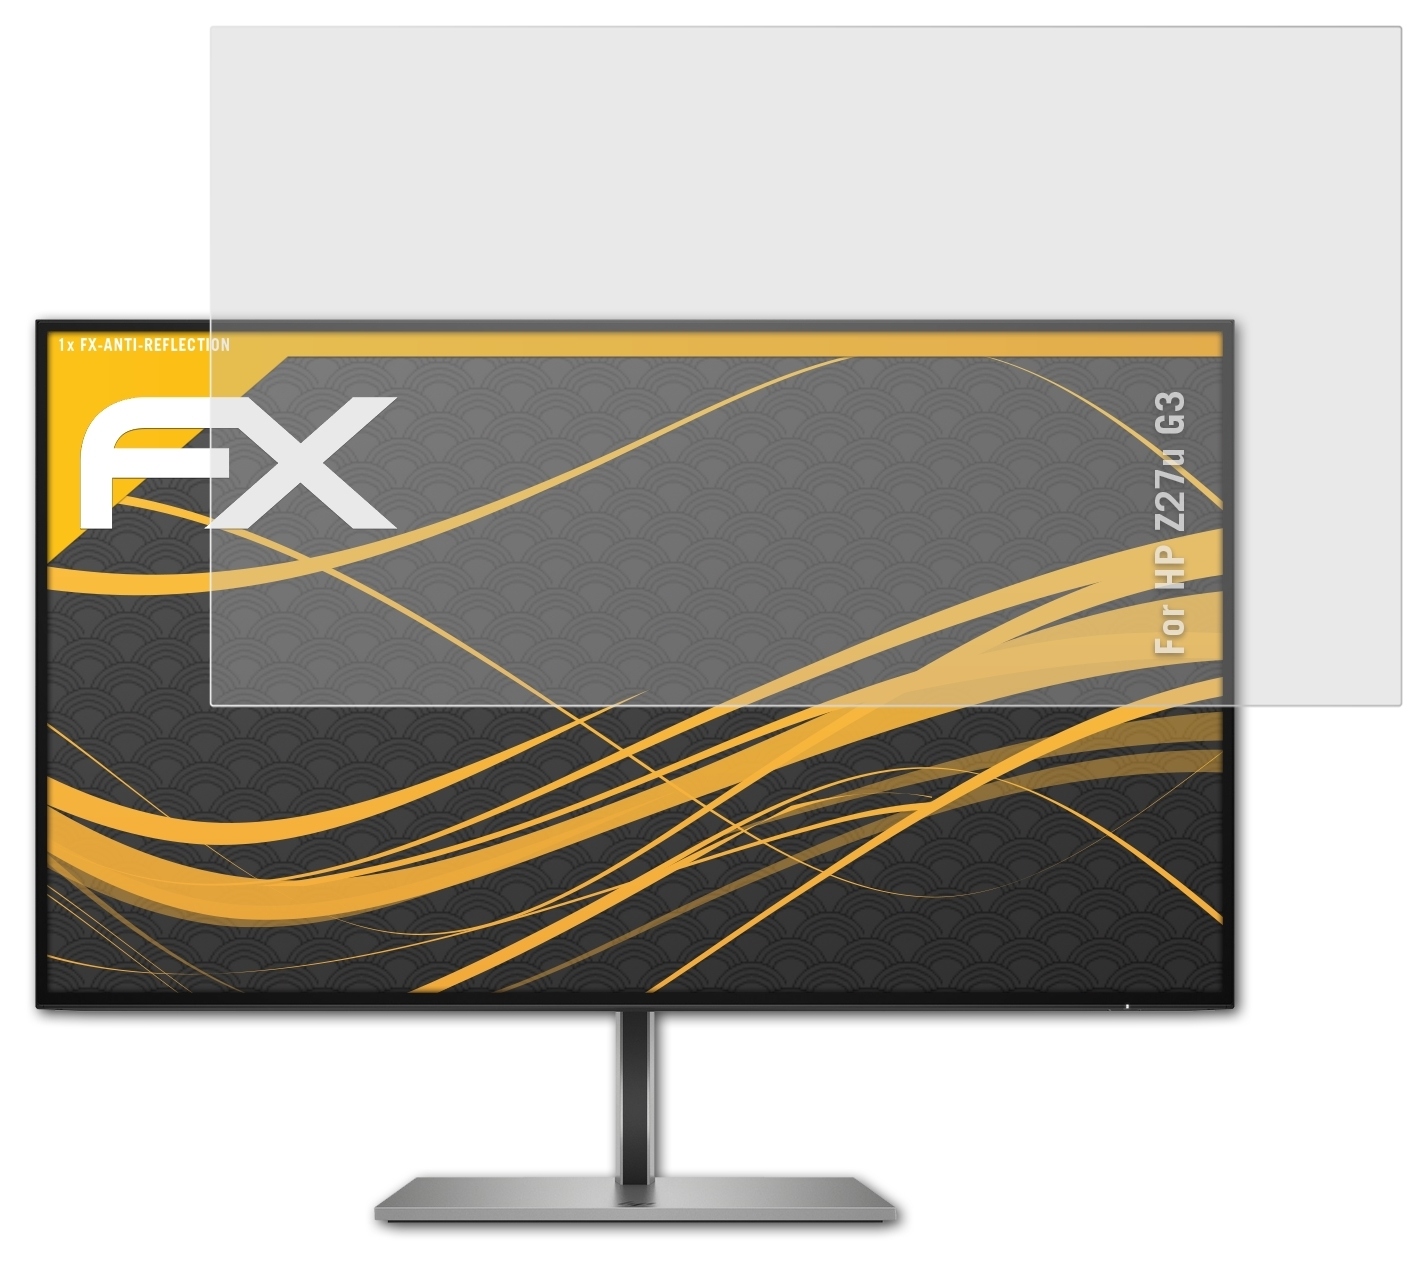 Z27u FX-Antireflex Displayschutz(für HP ATFOLIX G3)